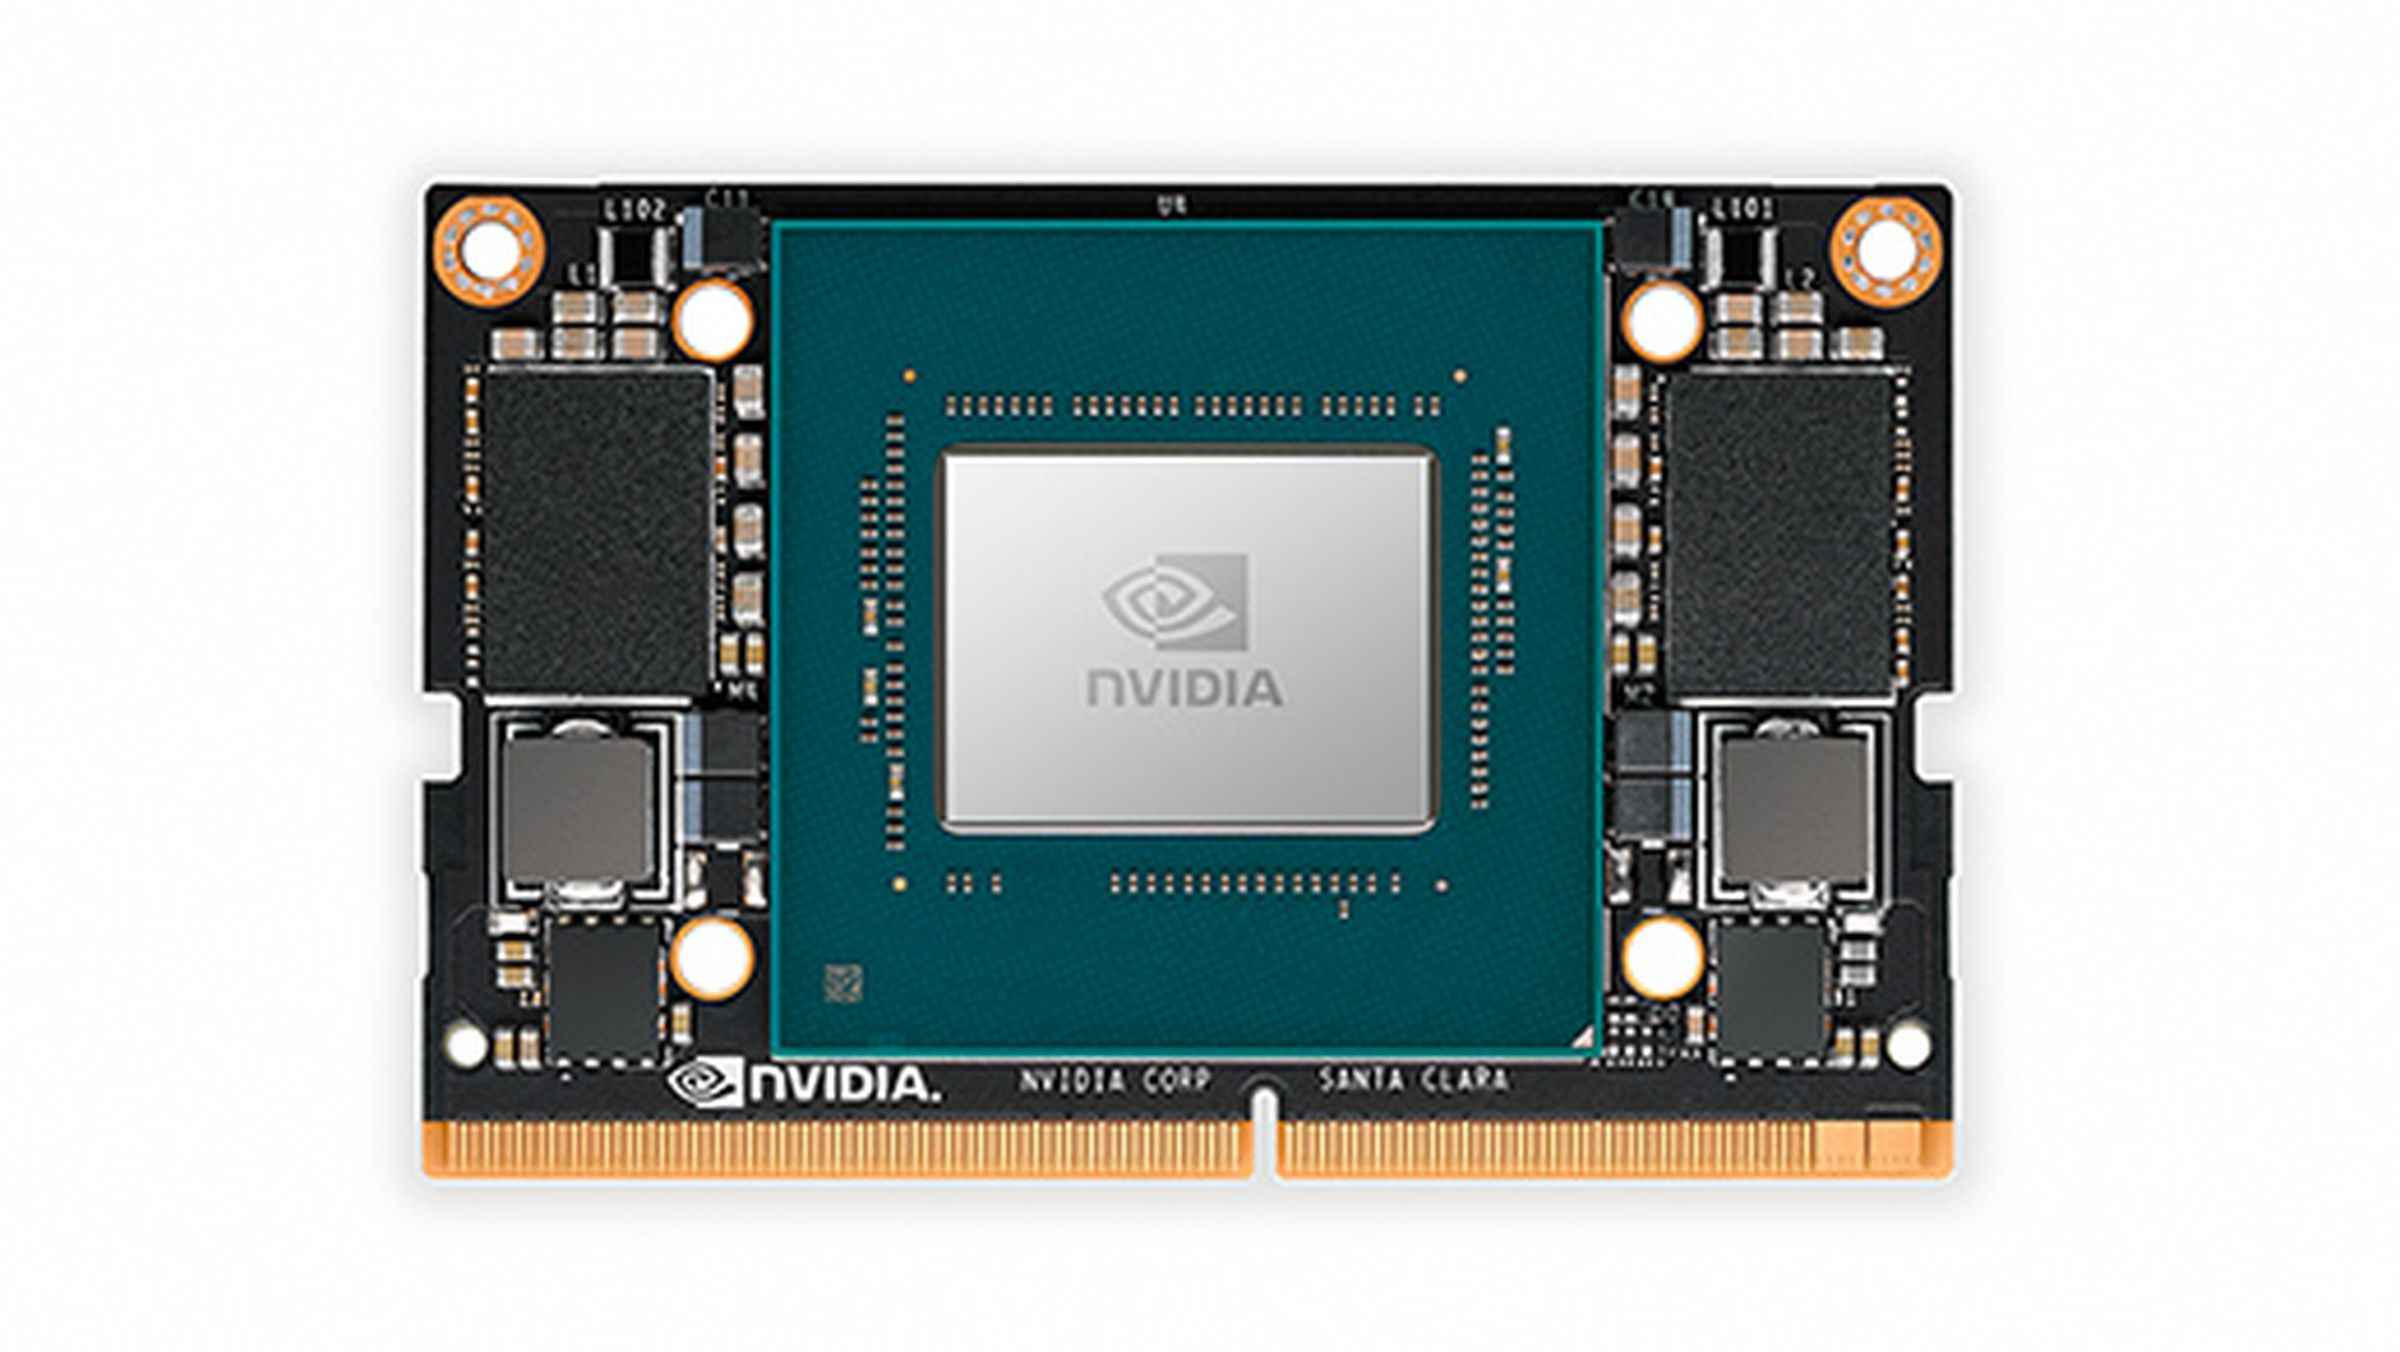 Nvidia logolu, çip üzerinde bir sistemi gösteren resim.  Sistem, Nvidia Jetson Xavier NX Modülü adı verilen bir yapay zeka platformudur.